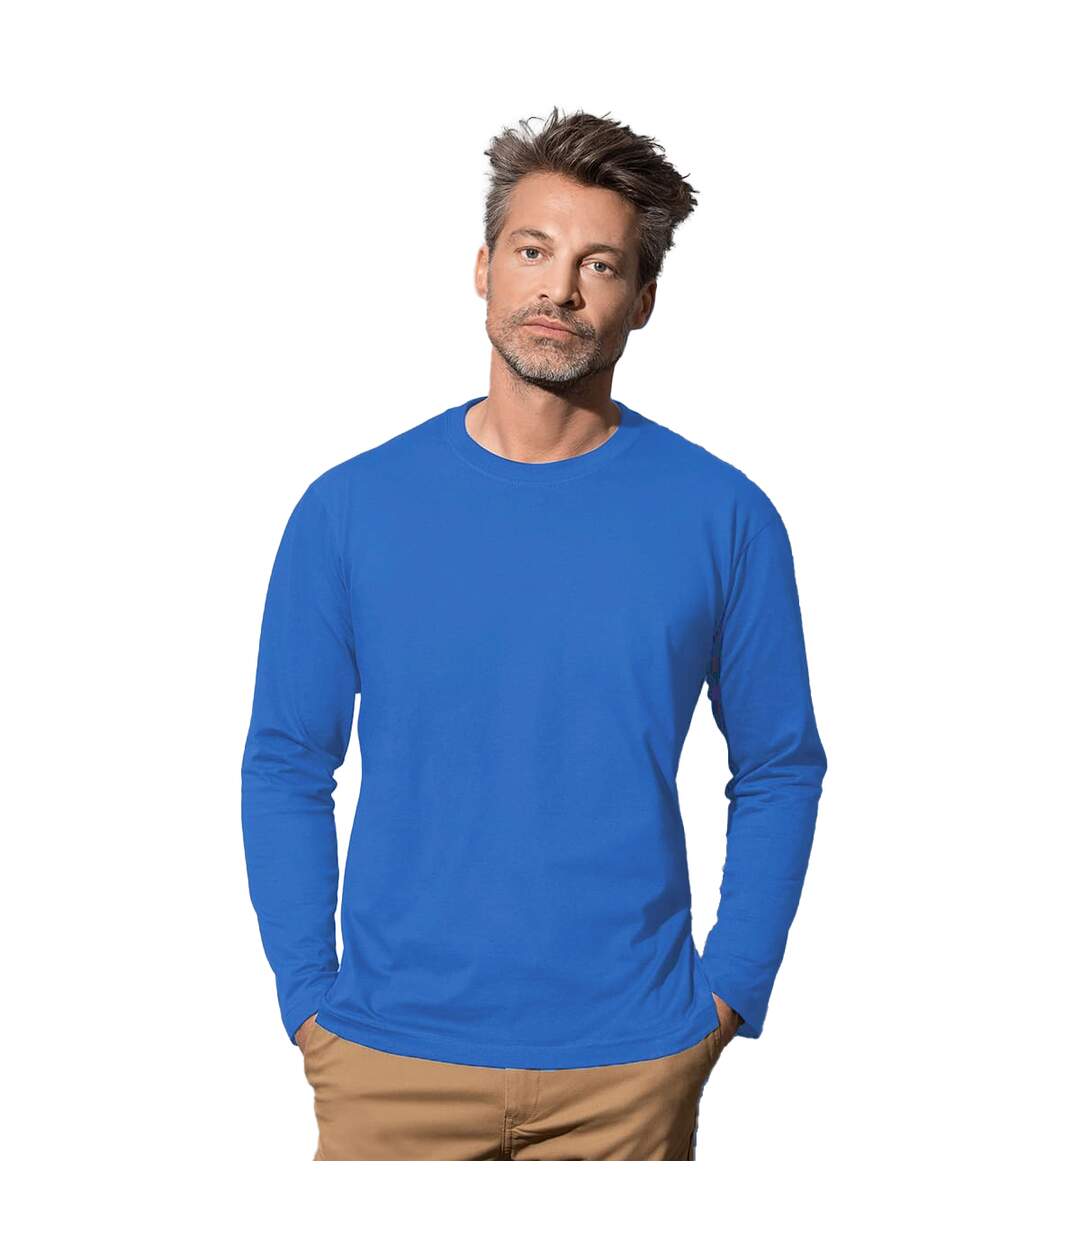 Stedman - T-shirt à manches longues classique - Homme (Bleu roi) - UTAB277